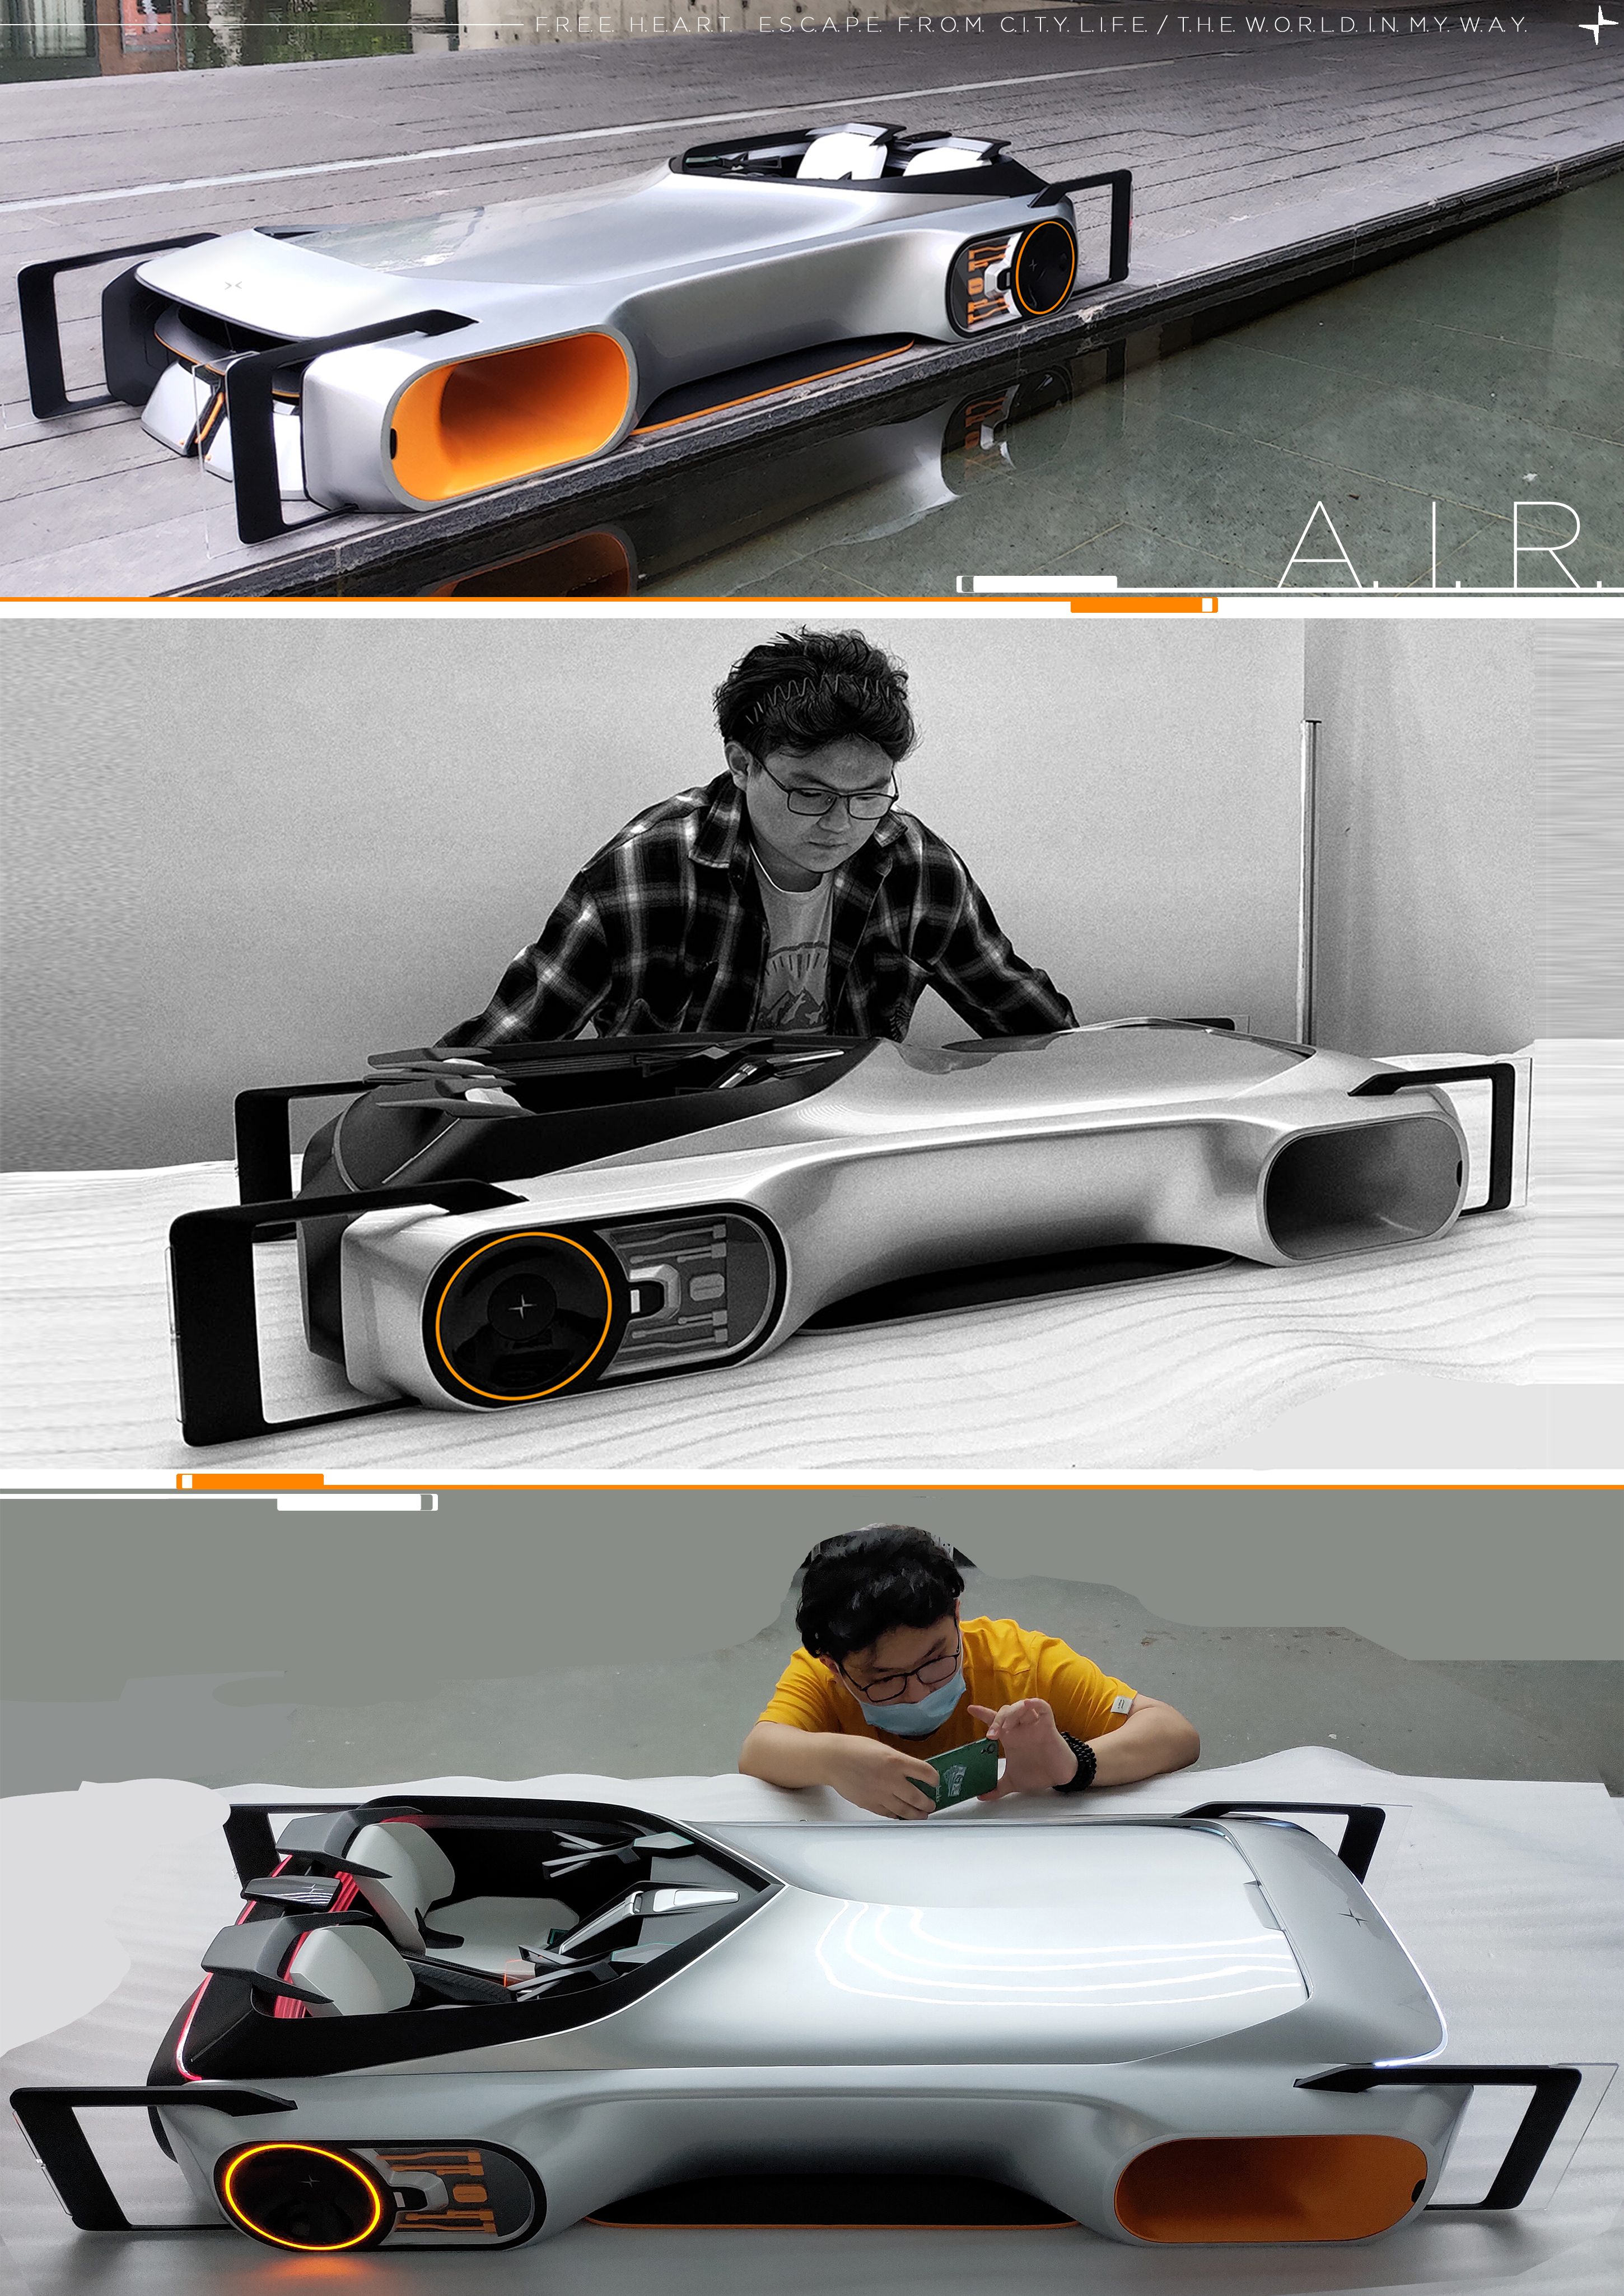 极星模块化敞篷概念电动车设计